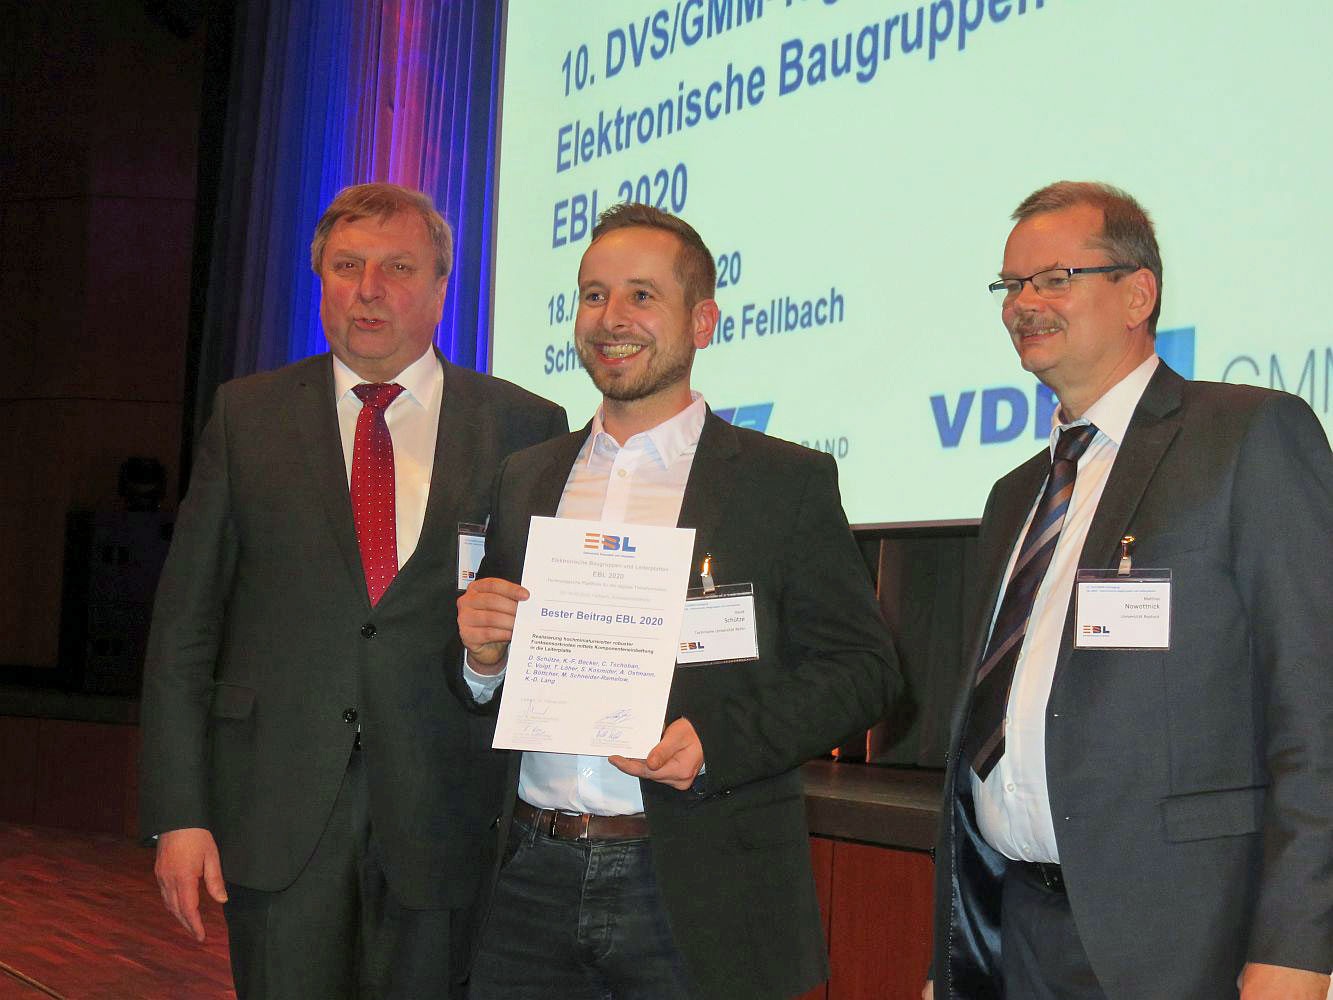 David Schütze Wins Best Paper Award at the EBL